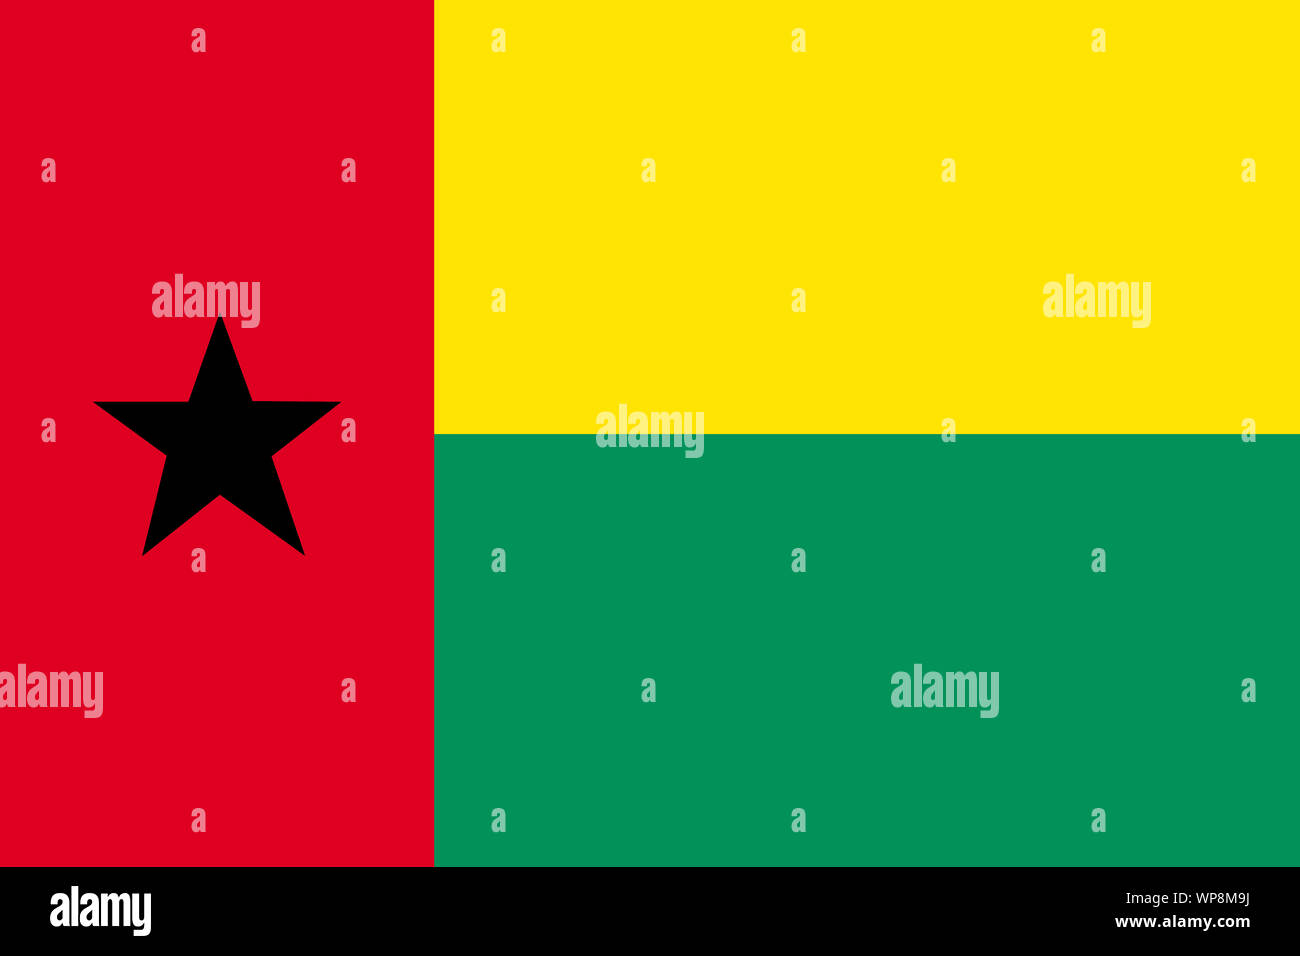 La Guinée-Bissau un drapeau de fond illustration rouge jaune vert noir star Banque D'Images